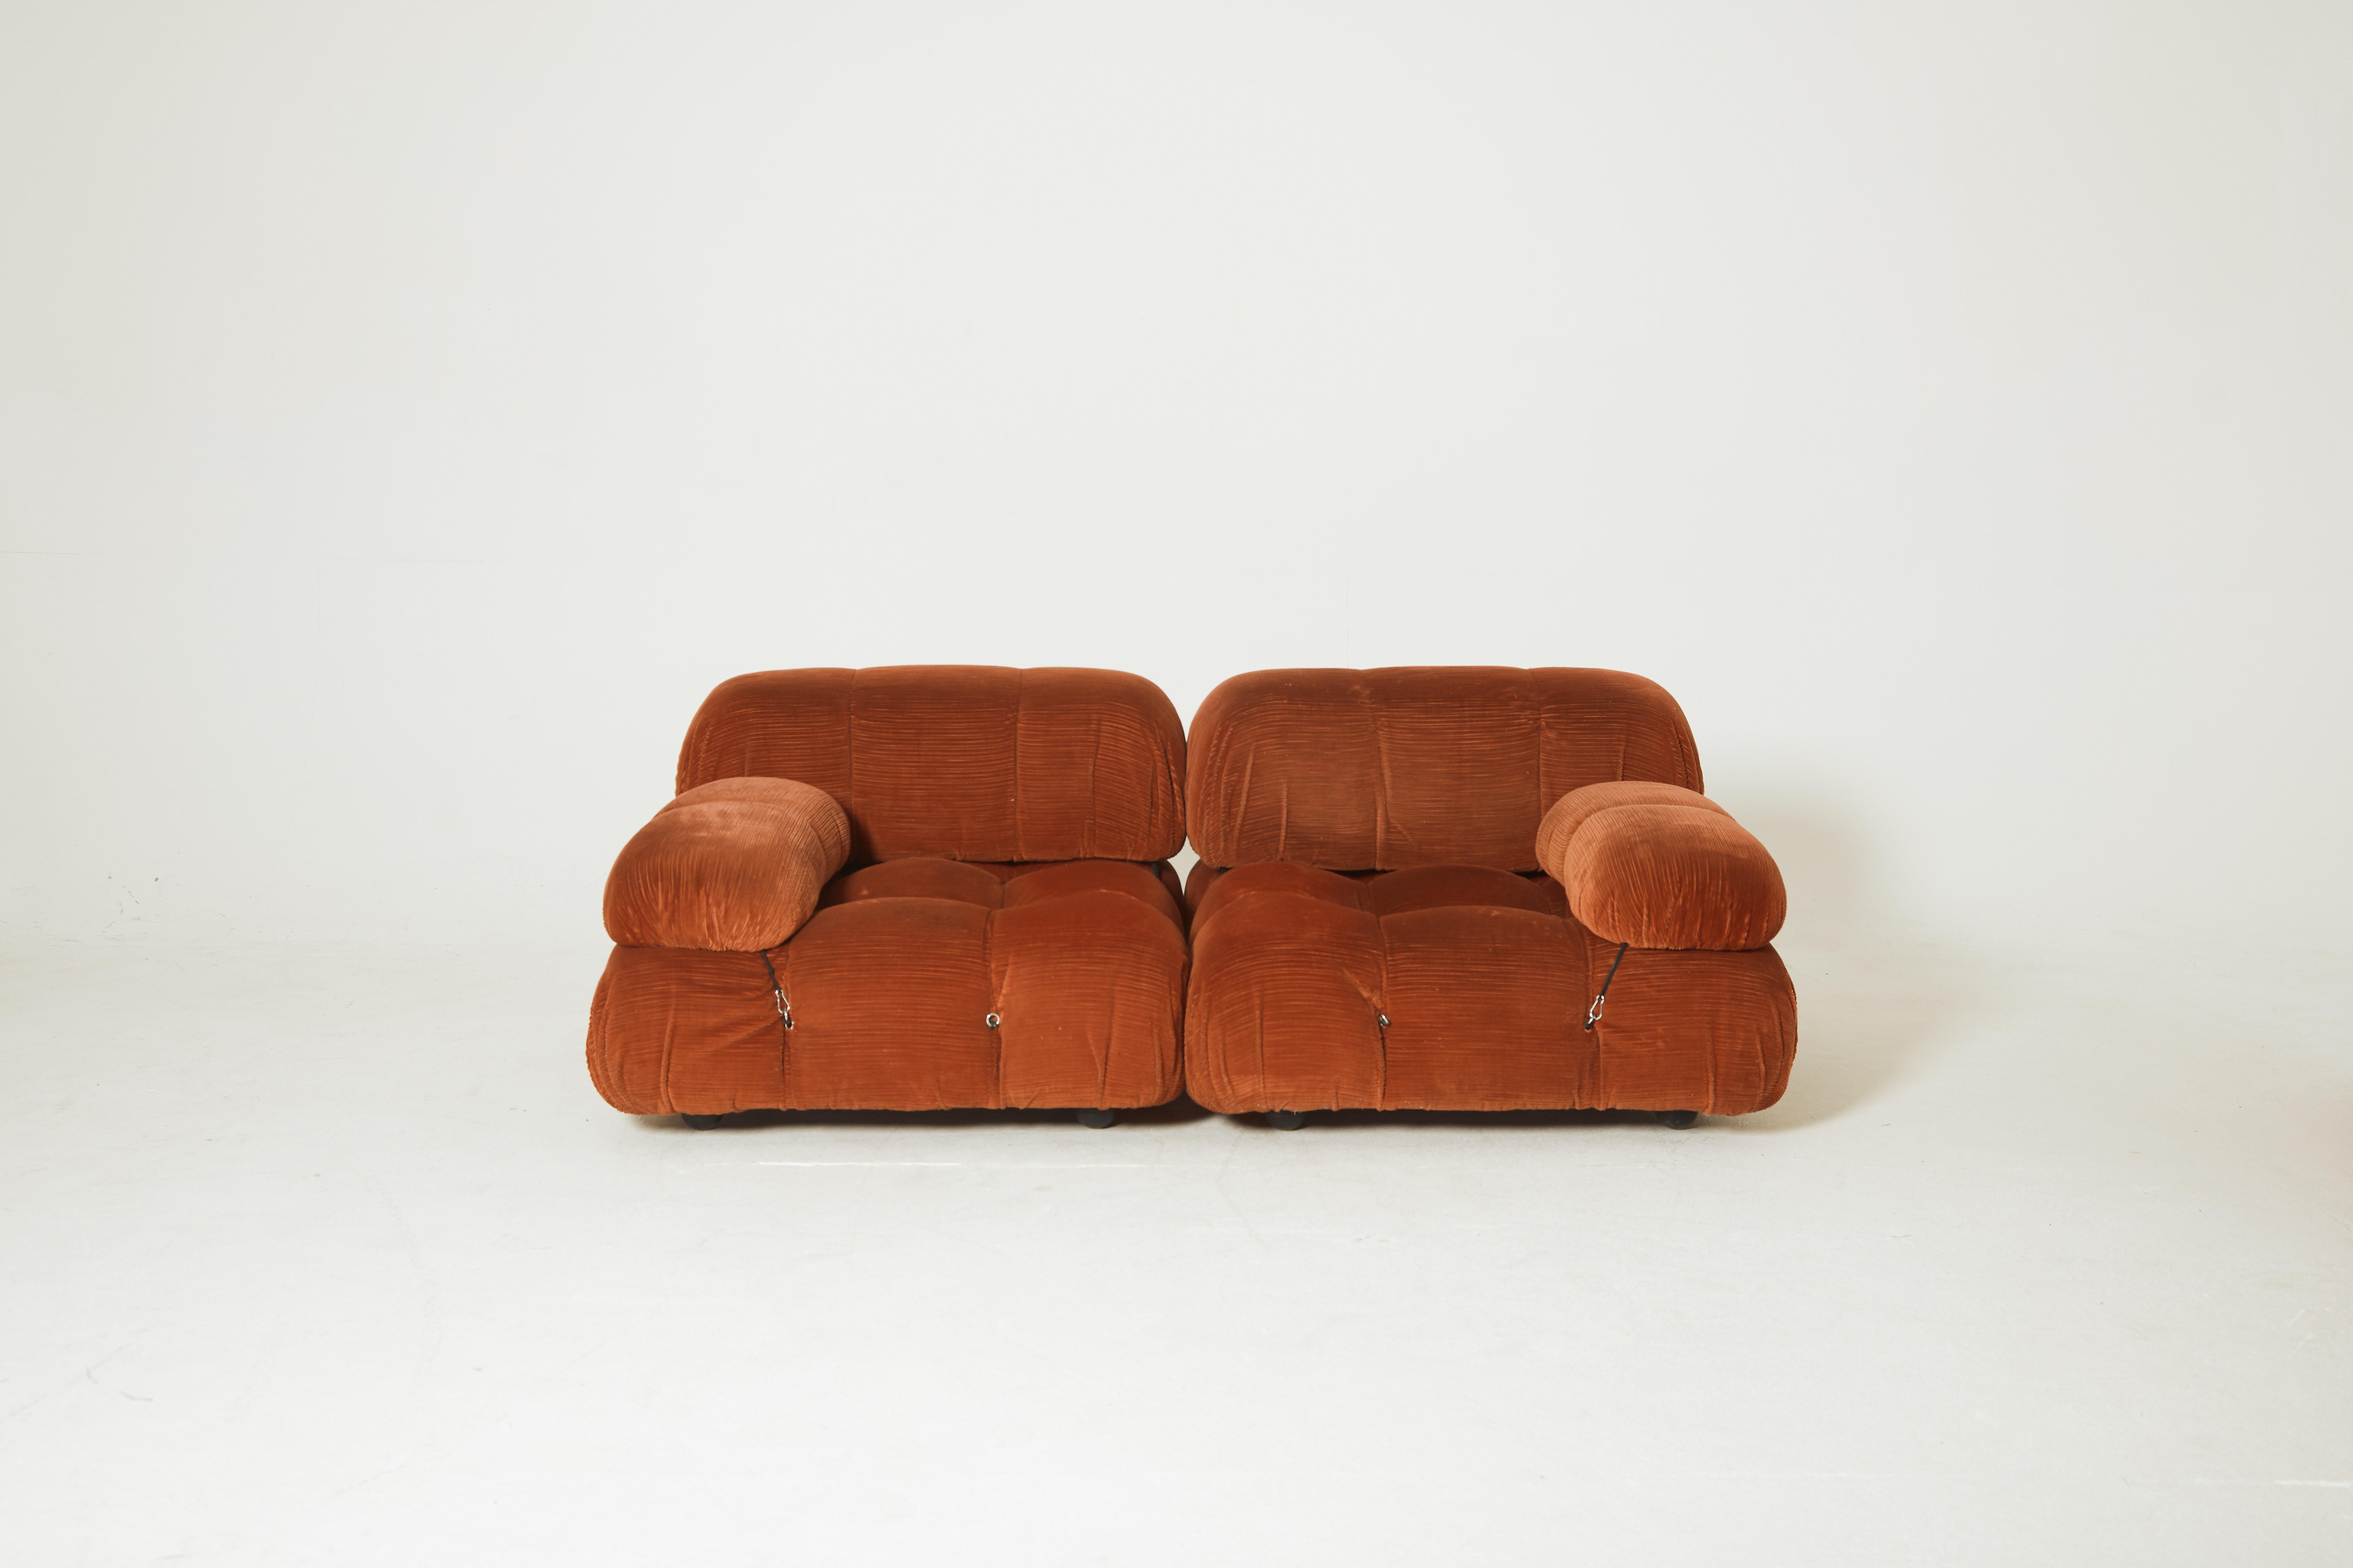 Italian Mario Bellini 'Camaleonda' Modular Sofa, C&B Italia, 1970s, for Reupholstery